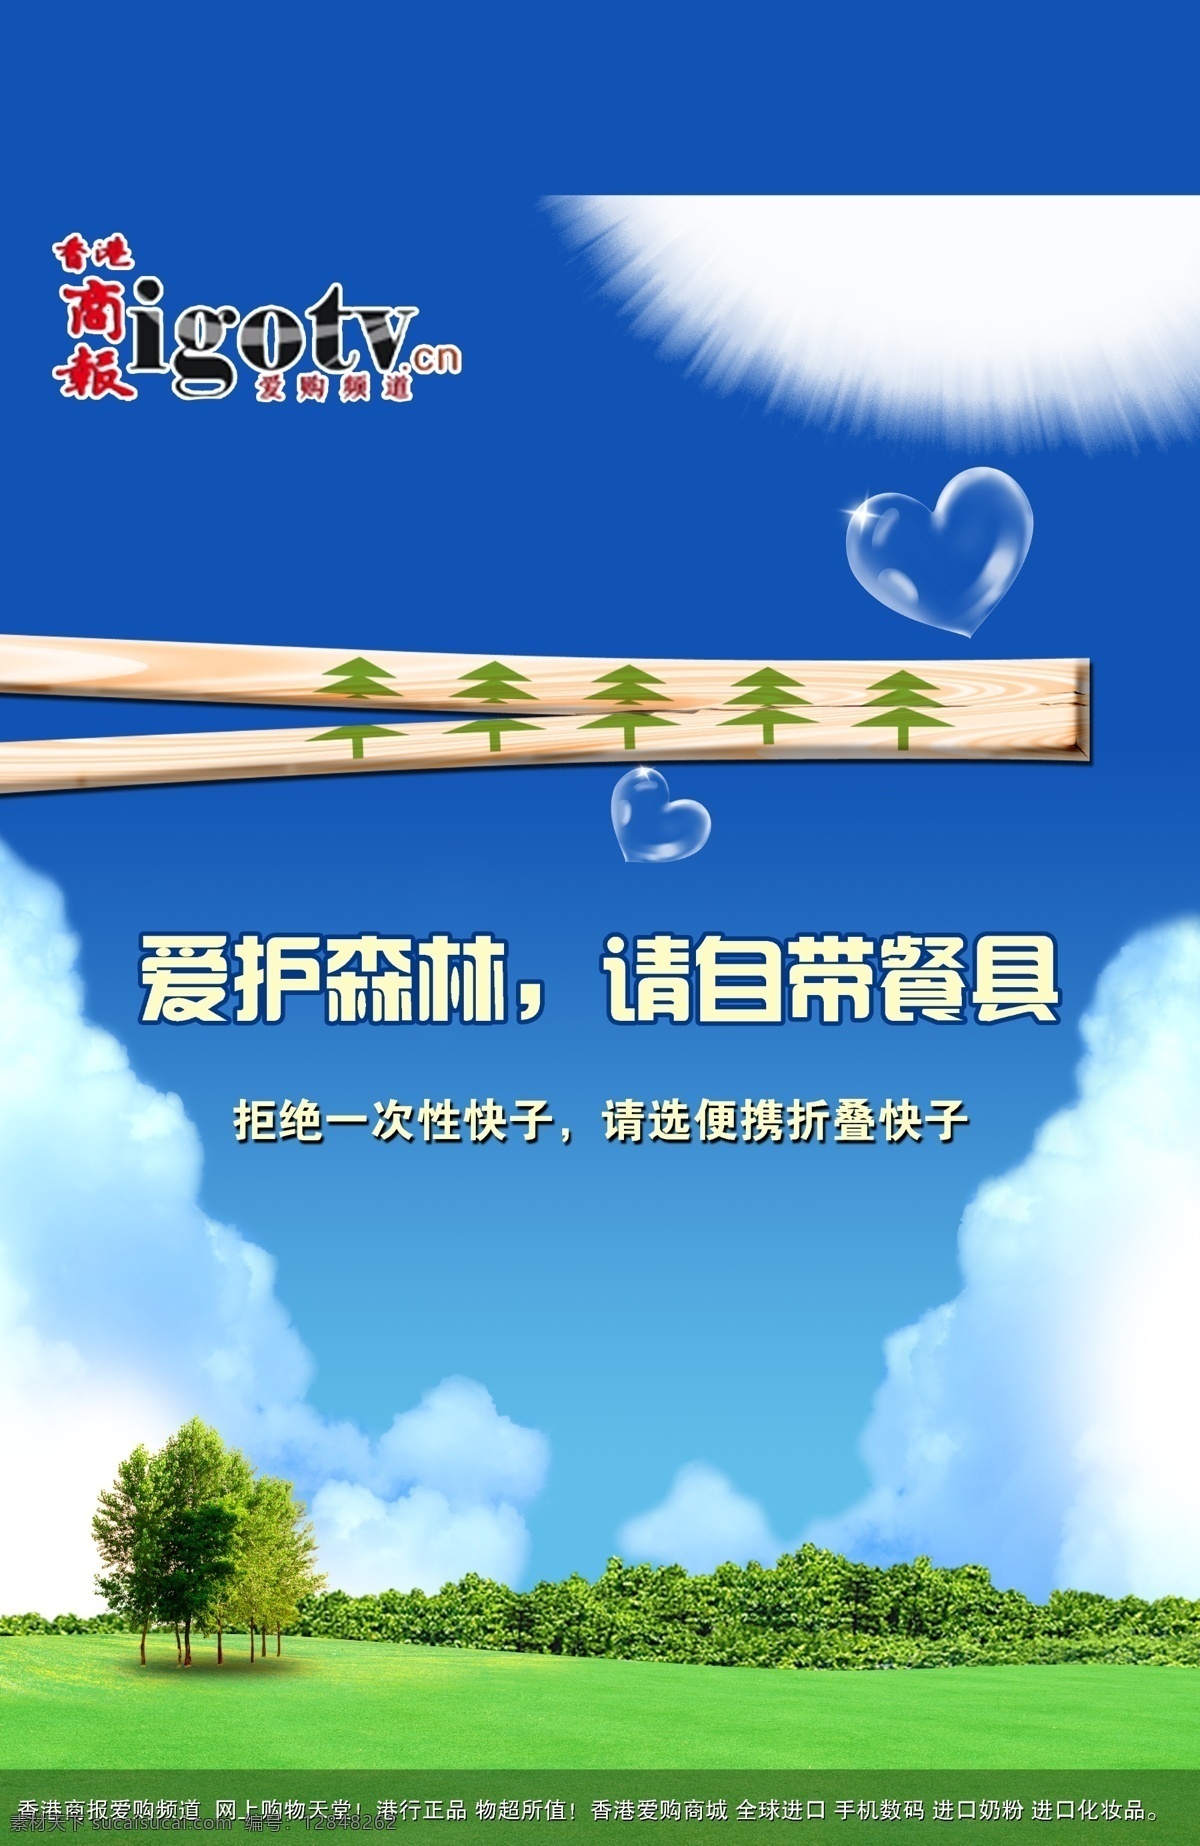 保护森林 公益广告 草地 蓝天 筷子 保护树木 拒绝 使用 次生 木质 环保 一次性筷子 广告设计模板 源文件